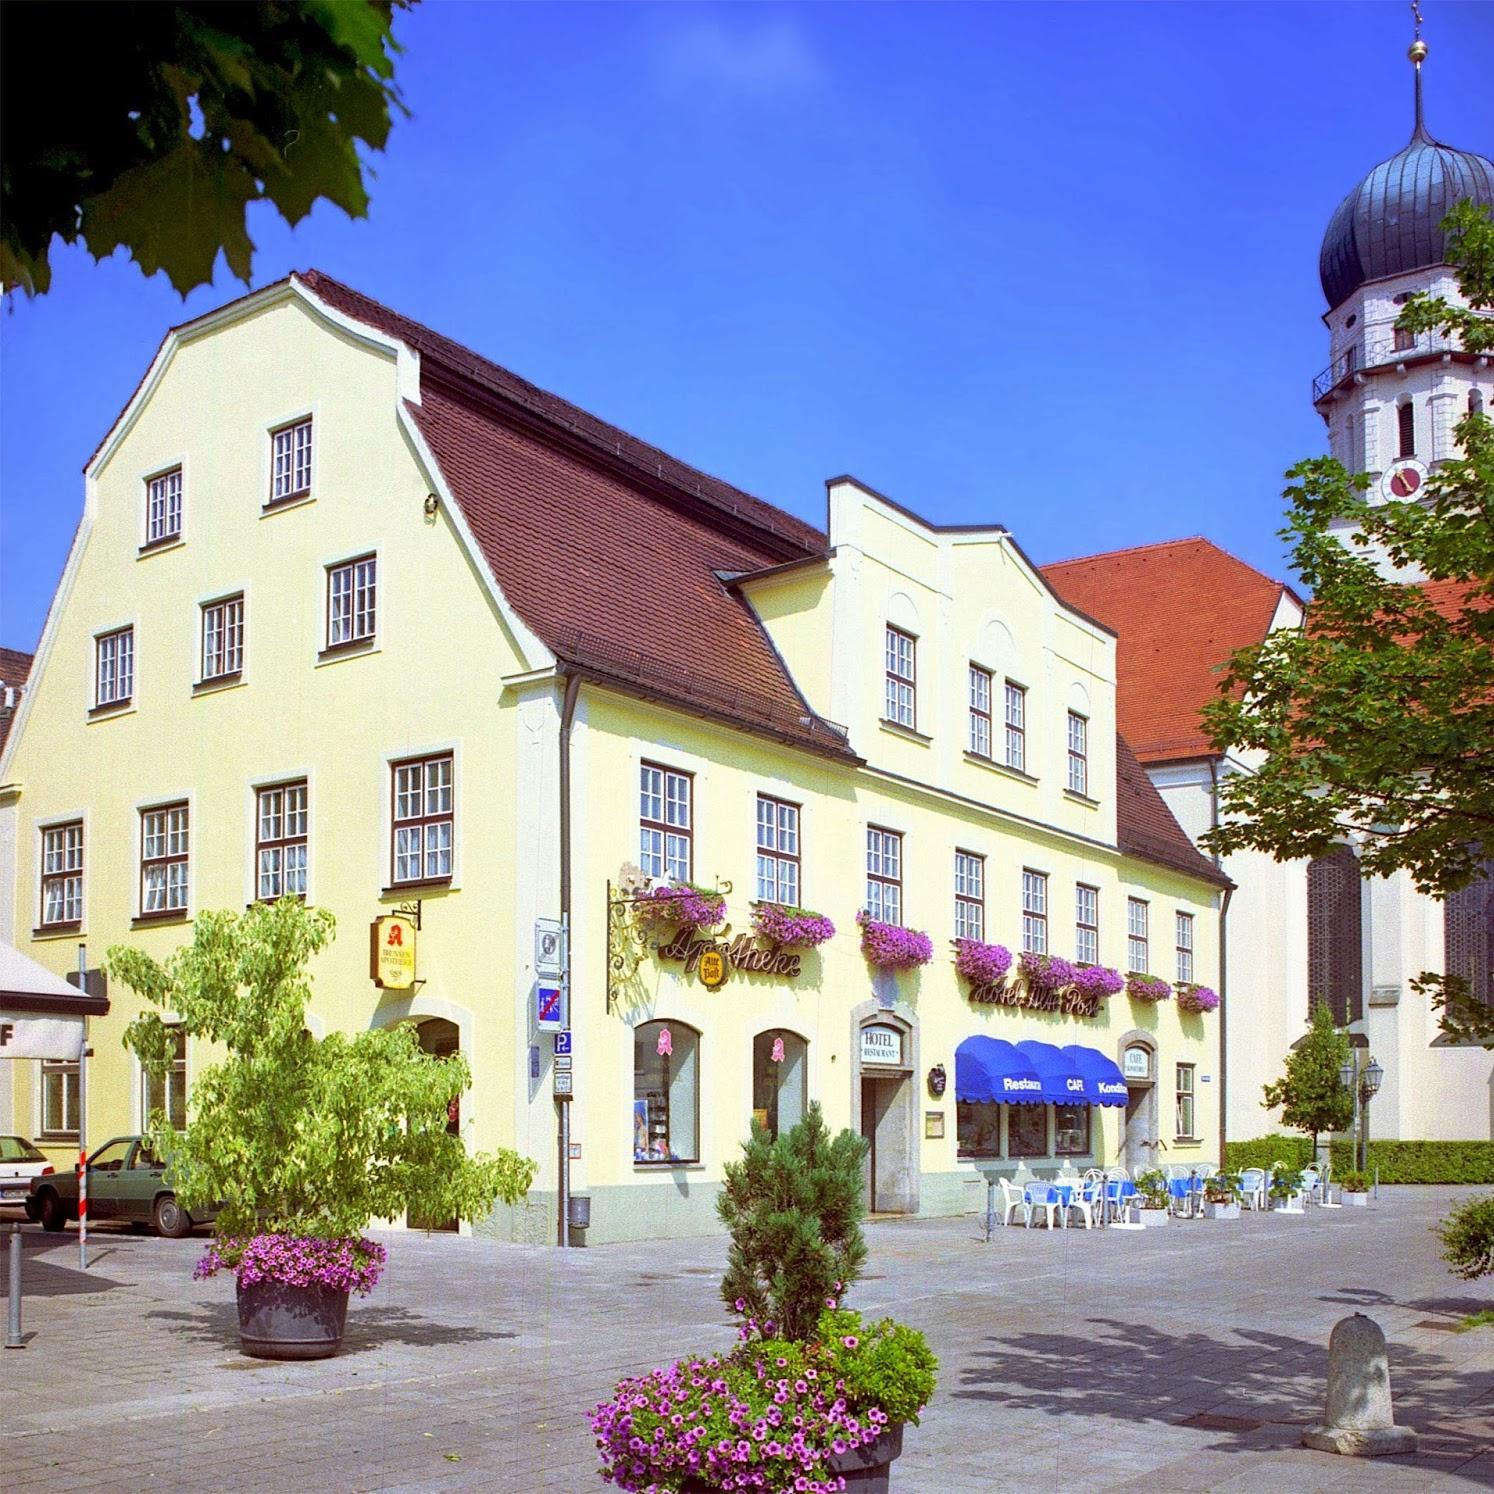 Restaurant "Hotel Alte Post" in Schongau